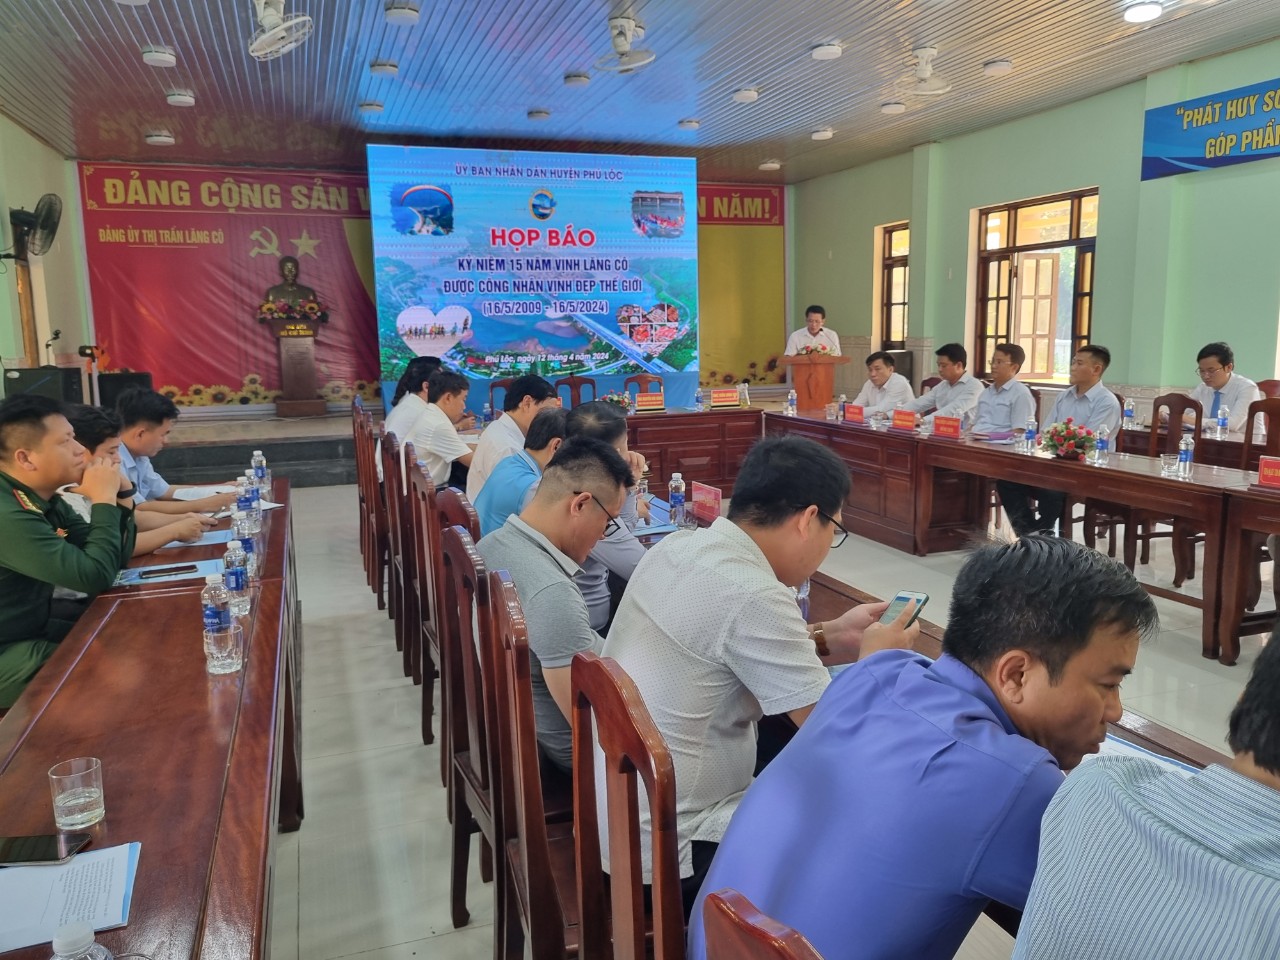 UBND huyện Phú Lộc tổ chức họp báo thông tin về các hoạt động cho sự kiện kỷ niệm 15 năm vịnh Lăng Cô được công nhận là Vịnh đẹp thế giới.